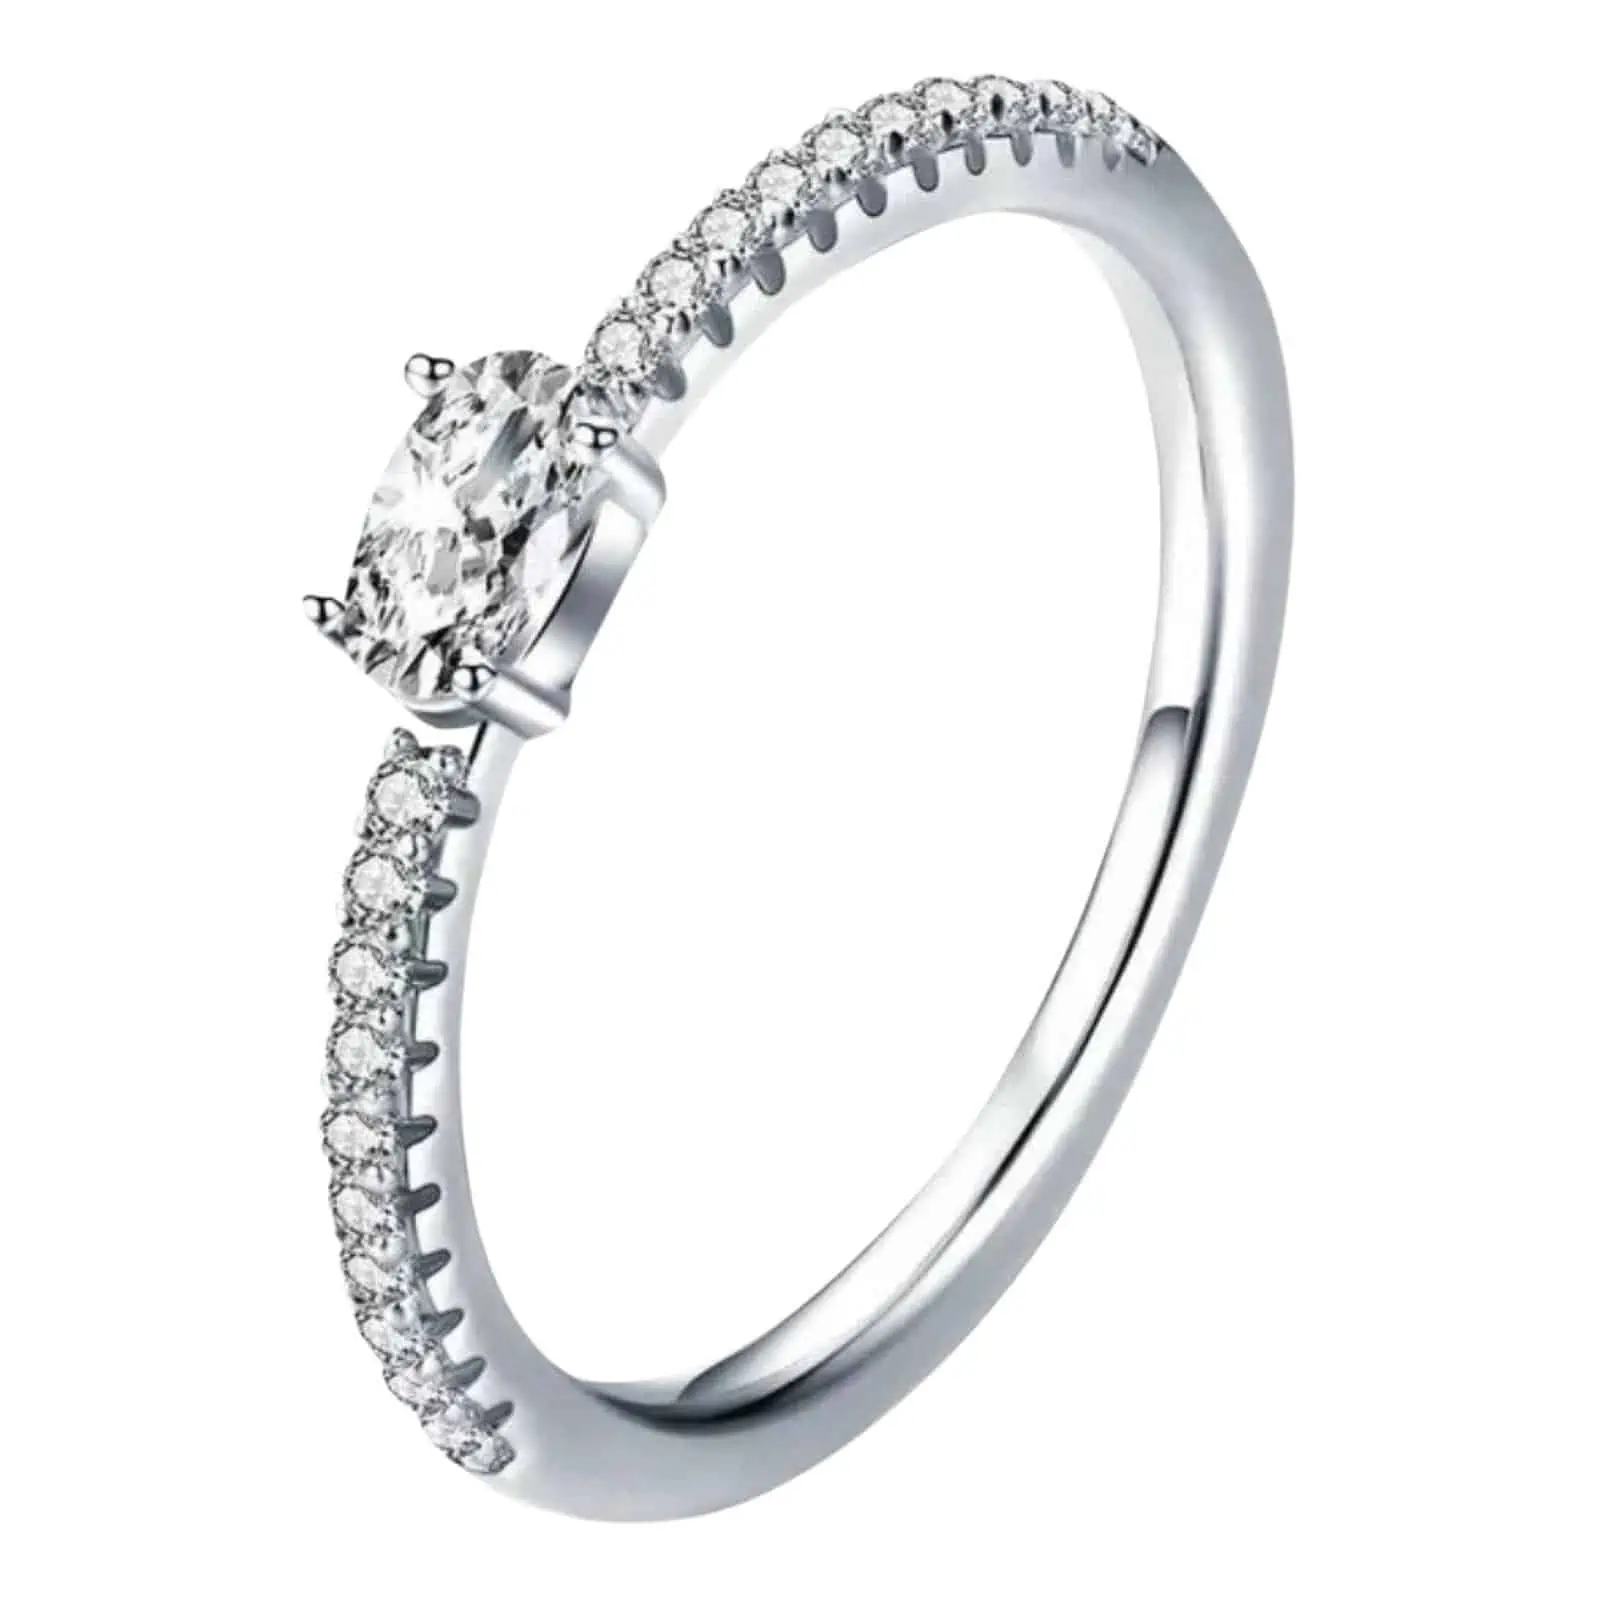 Product Afbeelding Vooraanzicht van onze prachtige nieuwe ring uit de ringen collectie. Deze ring is verkrijgbaar in verschillende mate. De ring is gemaakt van 925 sterling zilver en een grote vierkante zirkonia steen bovenop. Daarnaast halfrond ingelegd met kleine zirkonia steentjes.